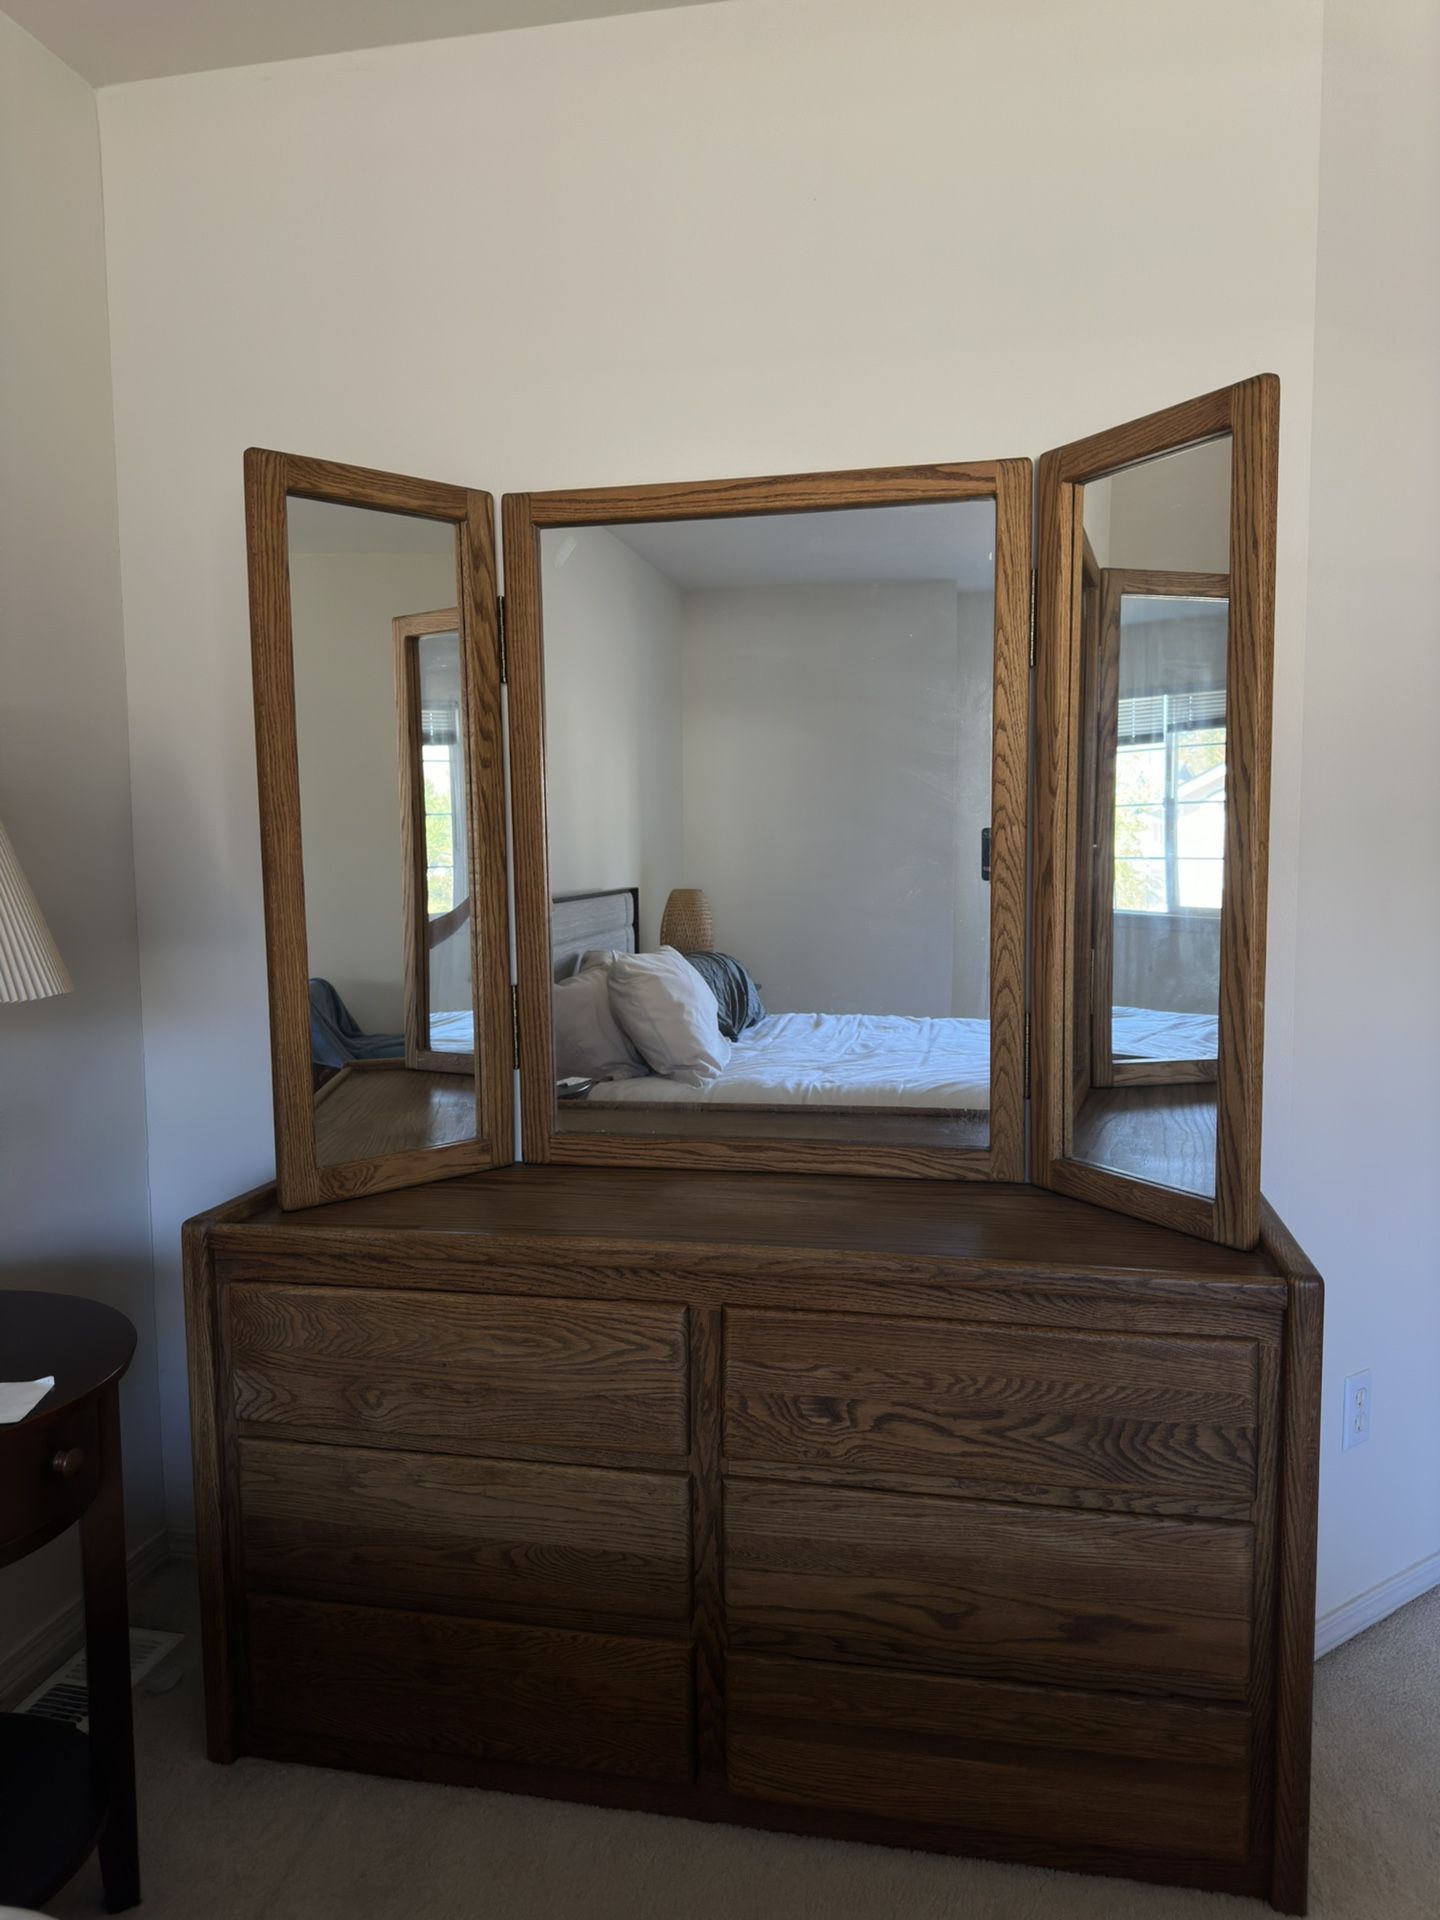 Wood Dresser + Mirror Vanity Duo